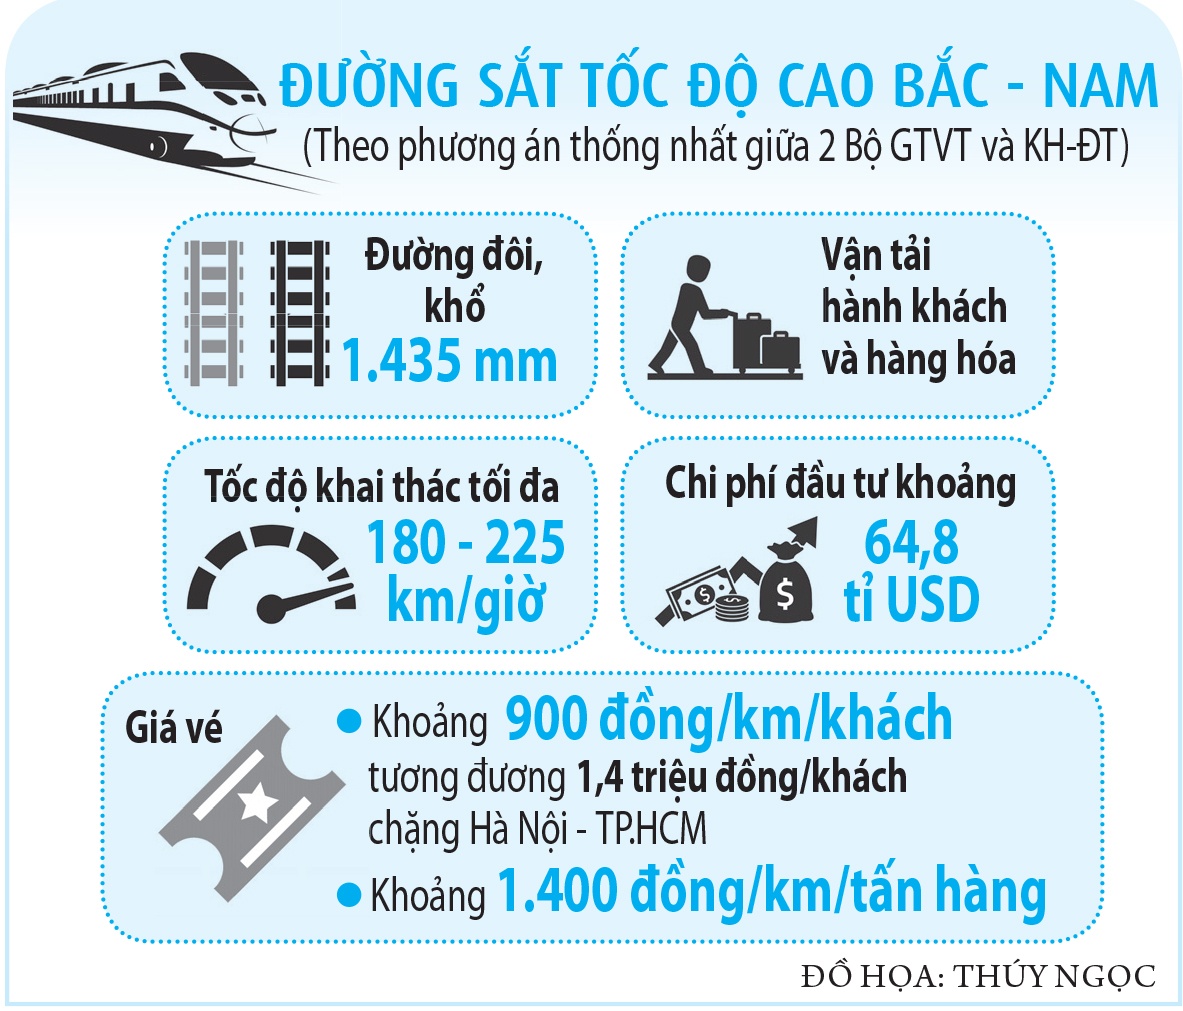 Đường sắt cao tốc Bắc - Nam tốc độ hơn 200km/giờ có lợi thế gì? - ảnh 4